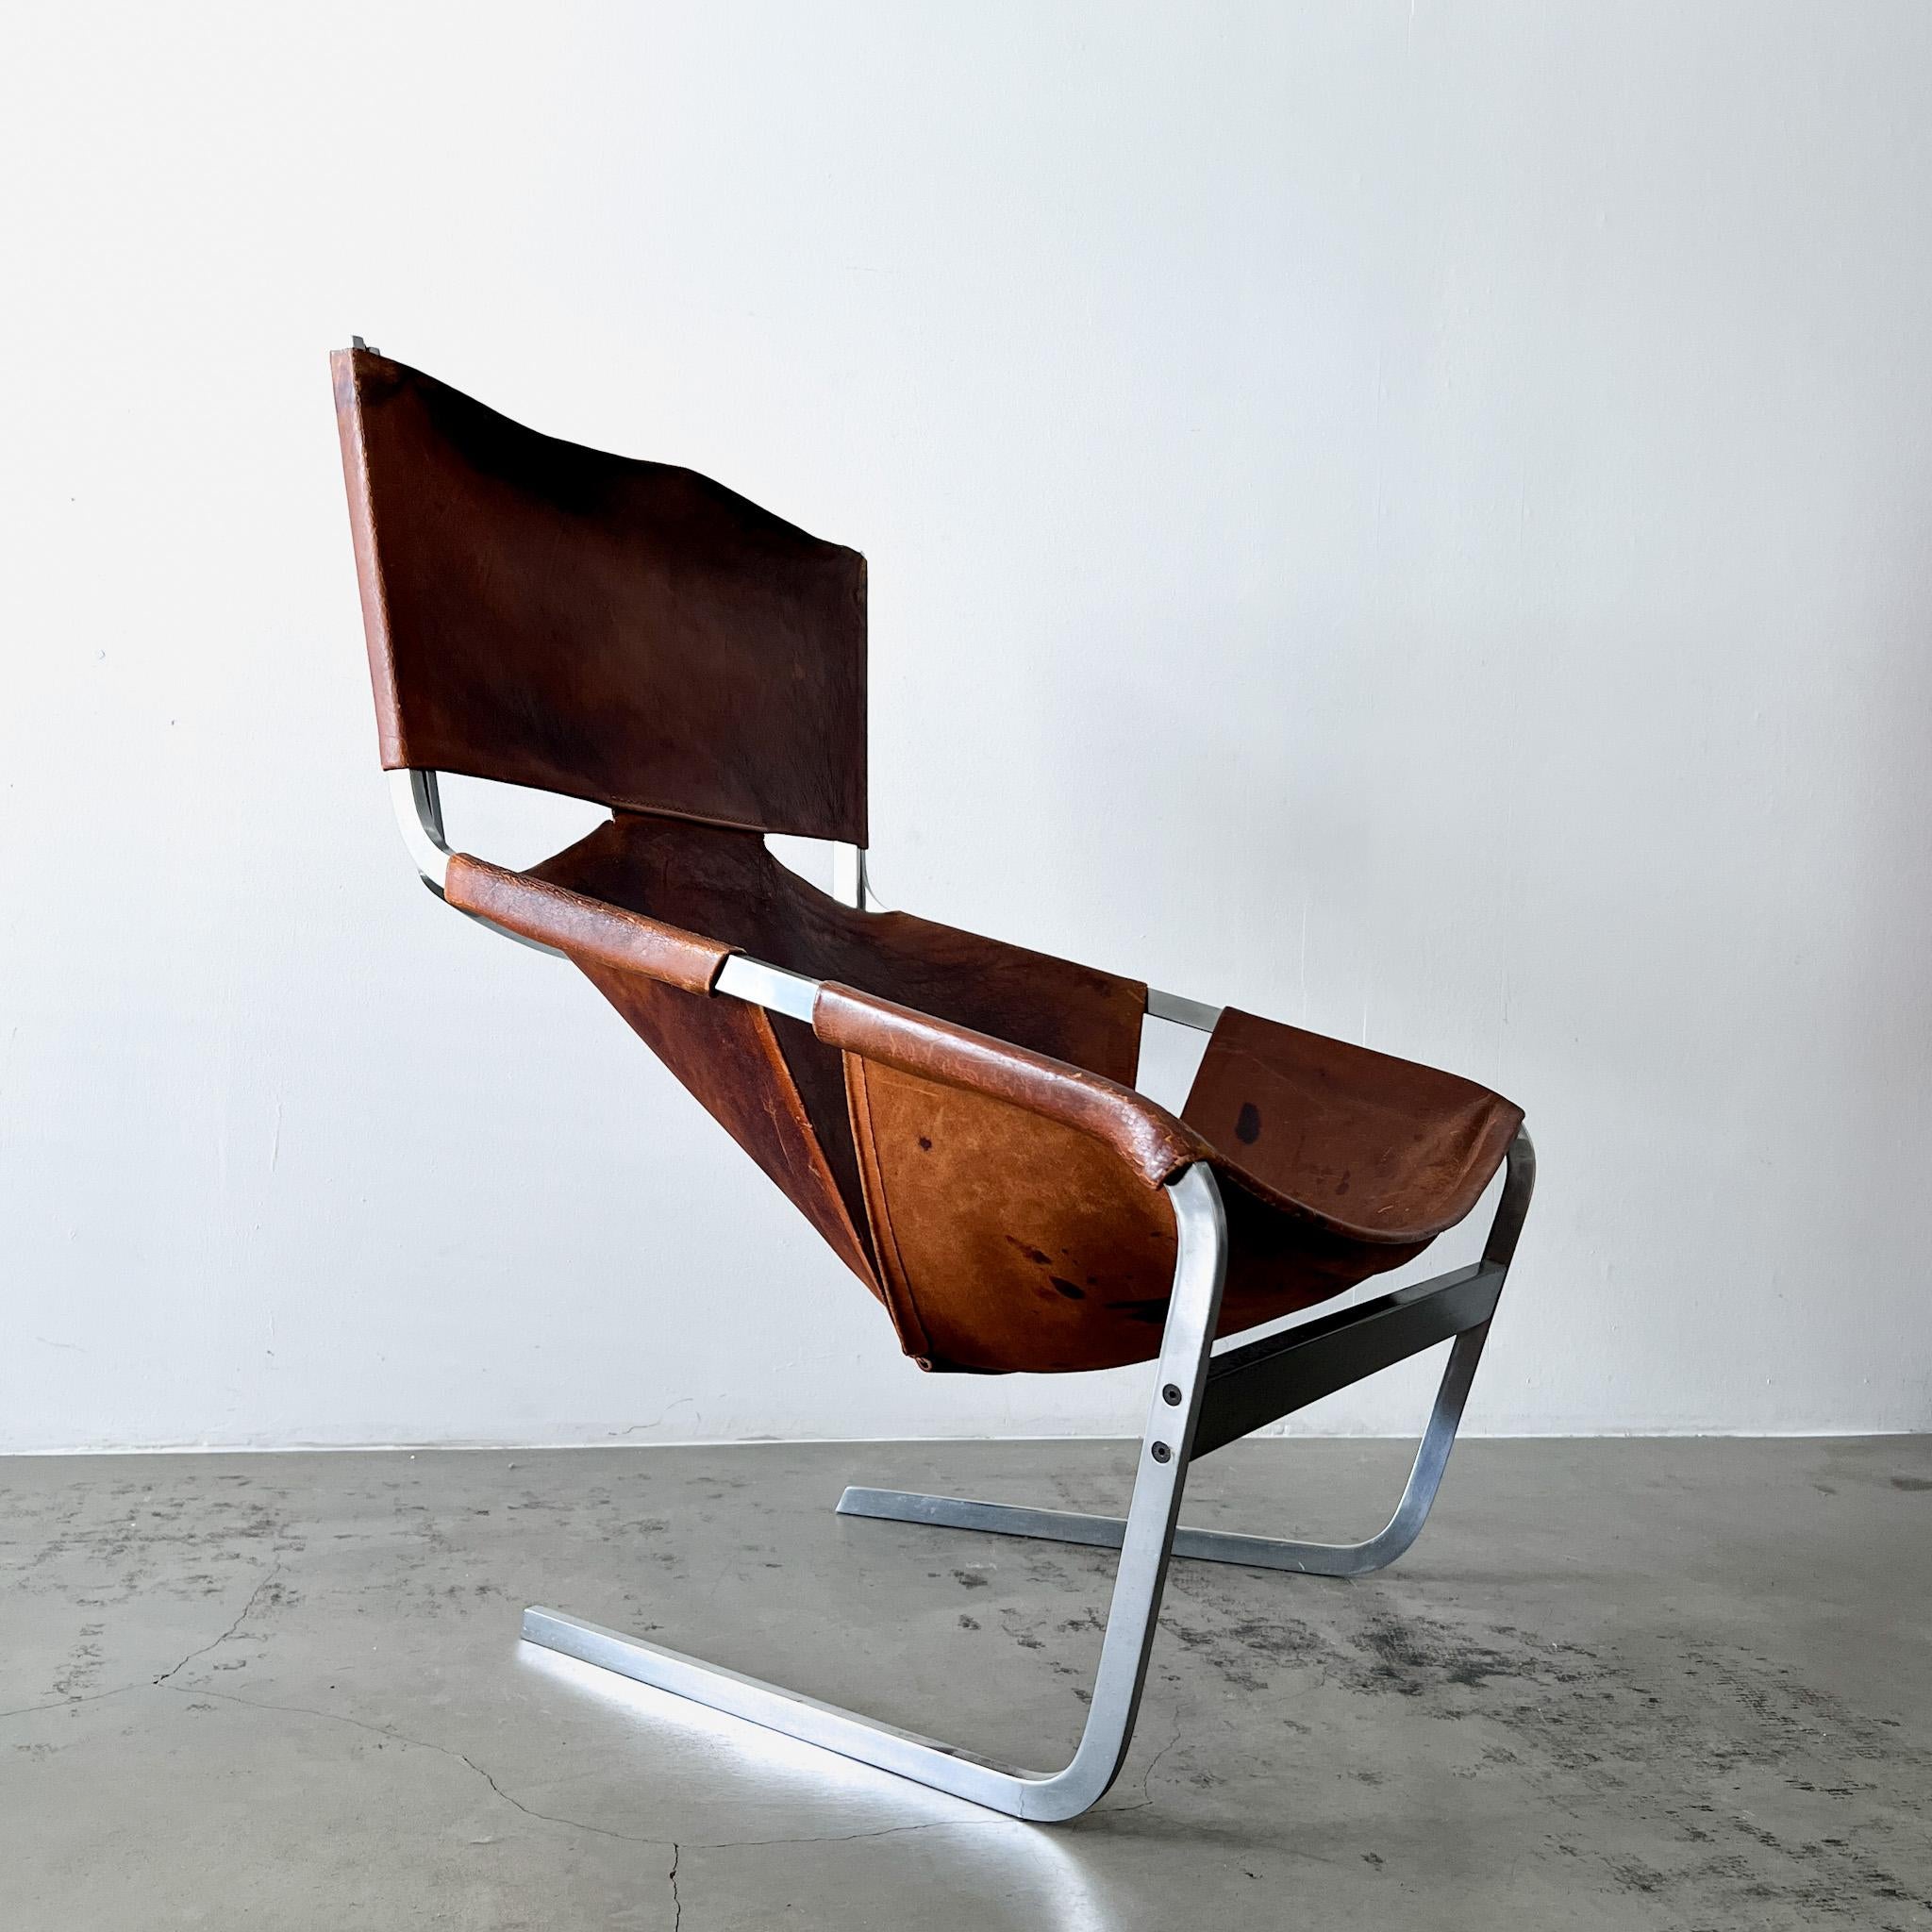 
Dieses exquisite Exemplar des ikonischen Sessels F444, der von Pierre Paulin entworfen und von Artifort 1963 hergestellt wurde, verkörpert  den innovativen Geist der 1960er Jahre. In dieser Zeit waren die Designer offen für neue Ideen, und die